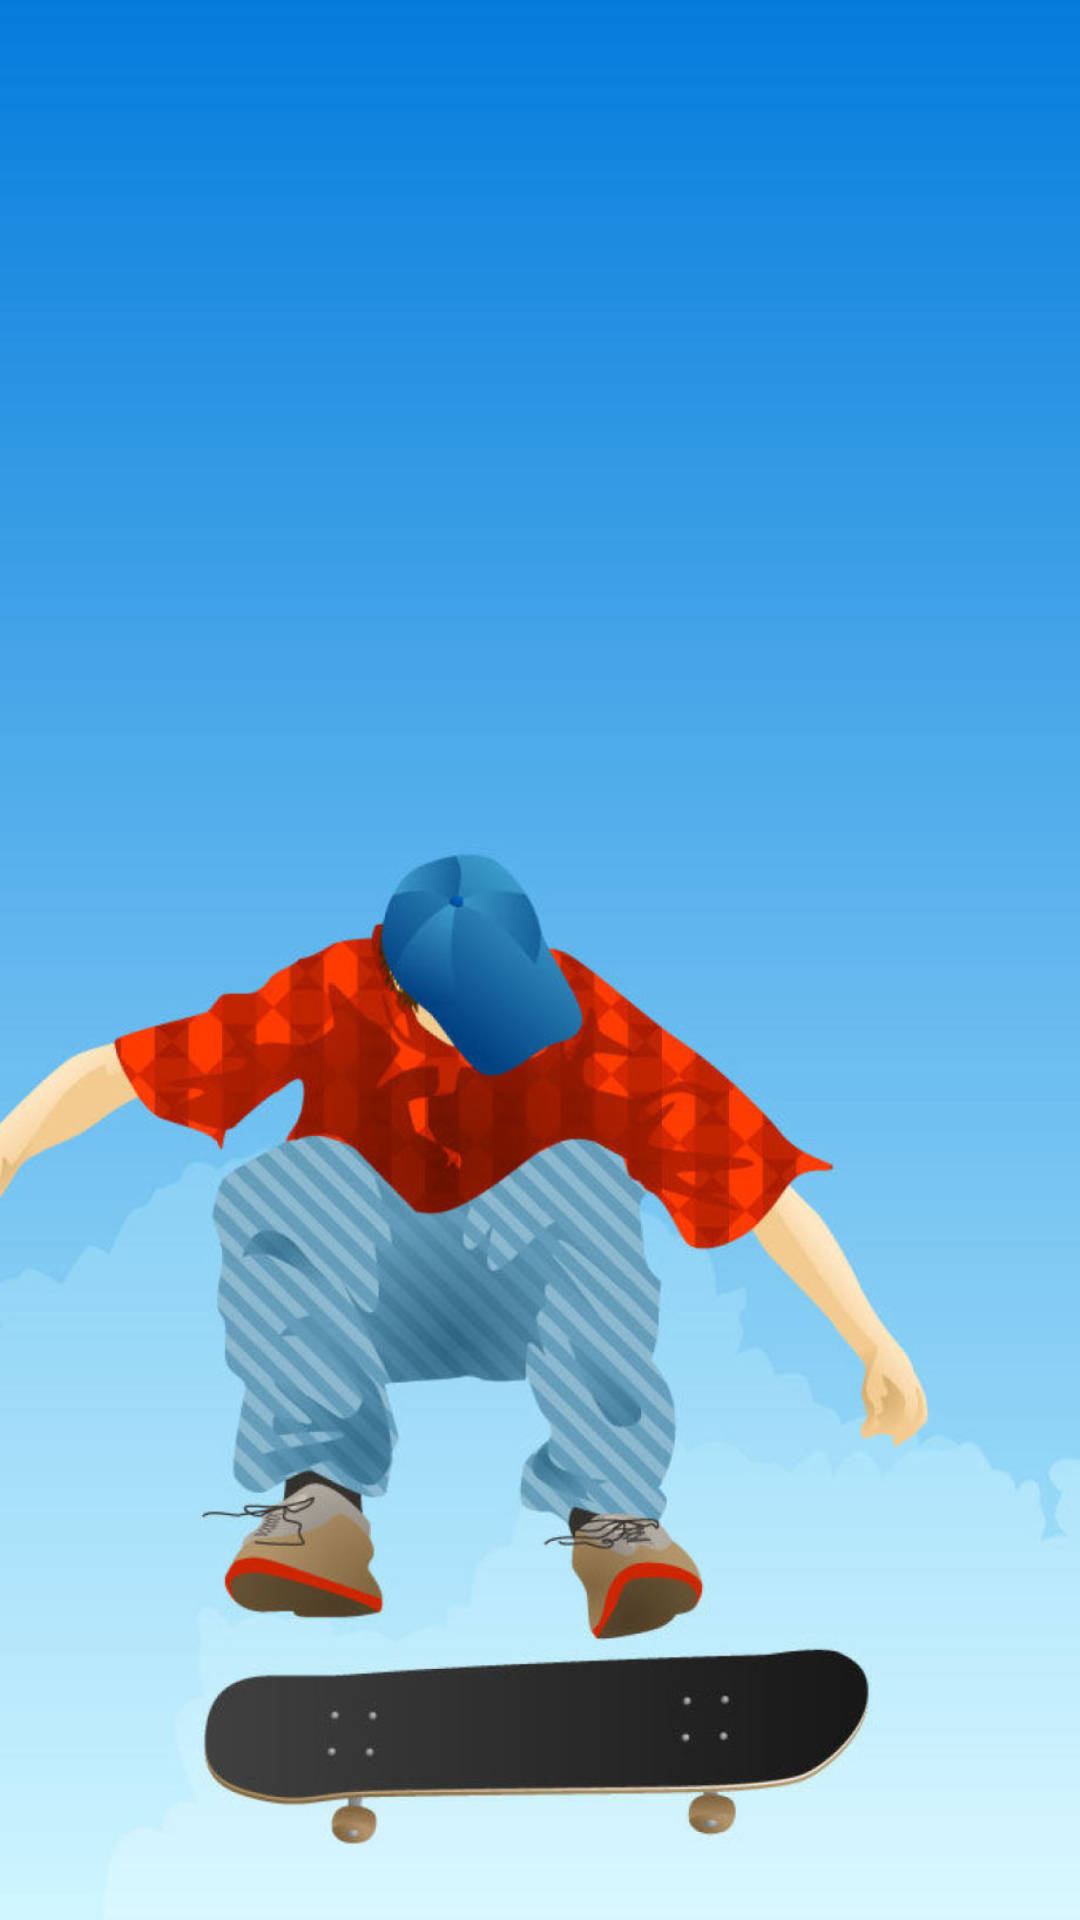 Aesthetic Skater Boy Digital Illustration Background